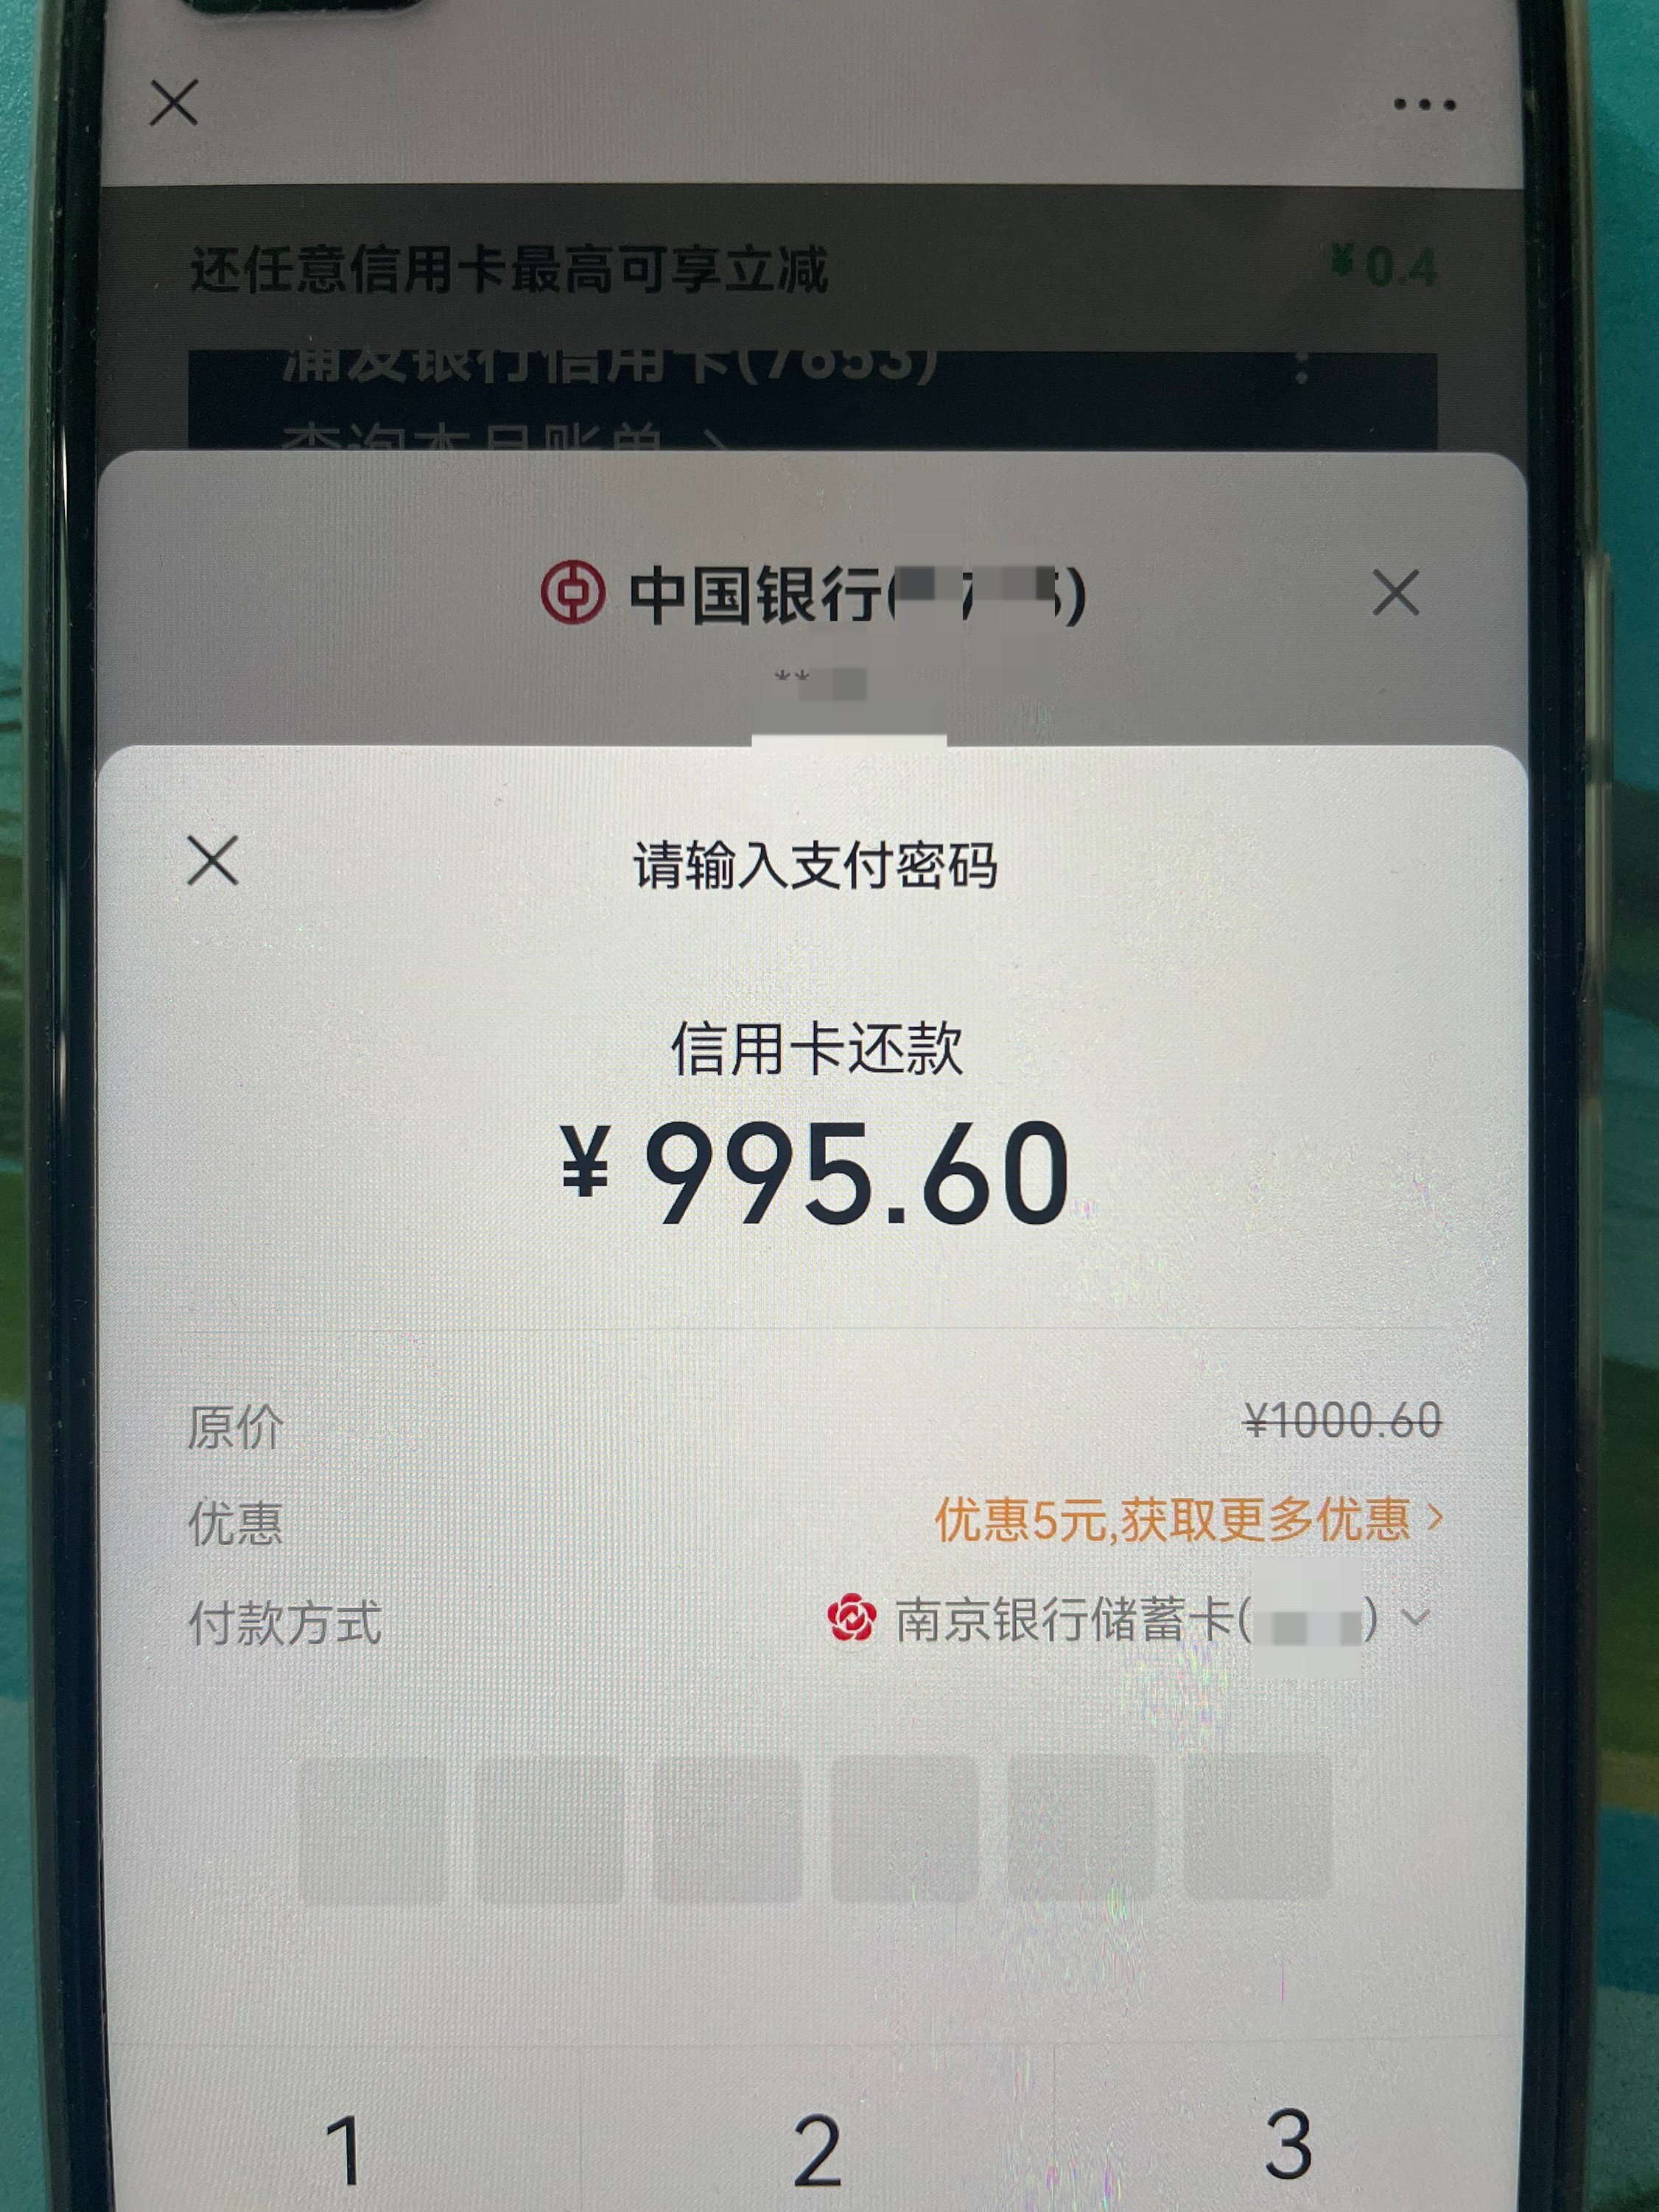 ……微还款-1000-5 南京储蓄卡-惠小助(52huixz.com)